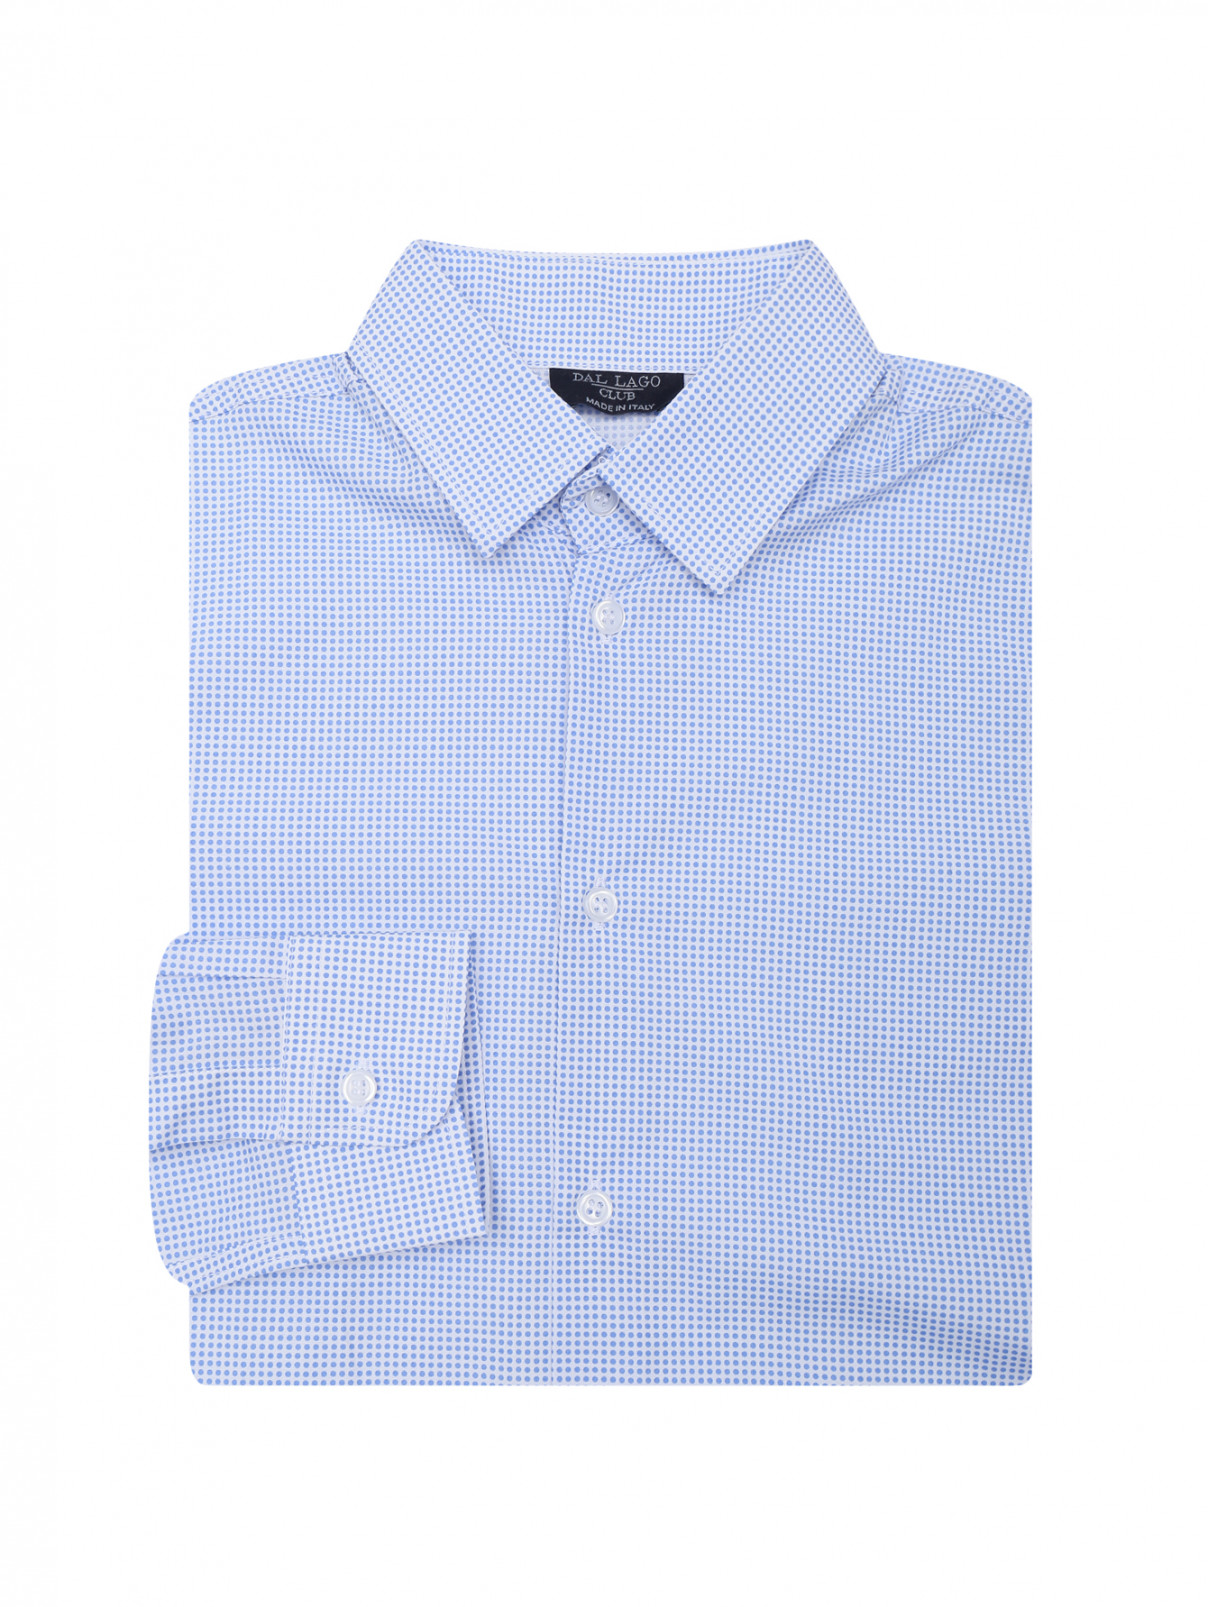 Рубашка из хлопка с принтом Dal Lago  –  Общий вид  – Цвет:  Синий